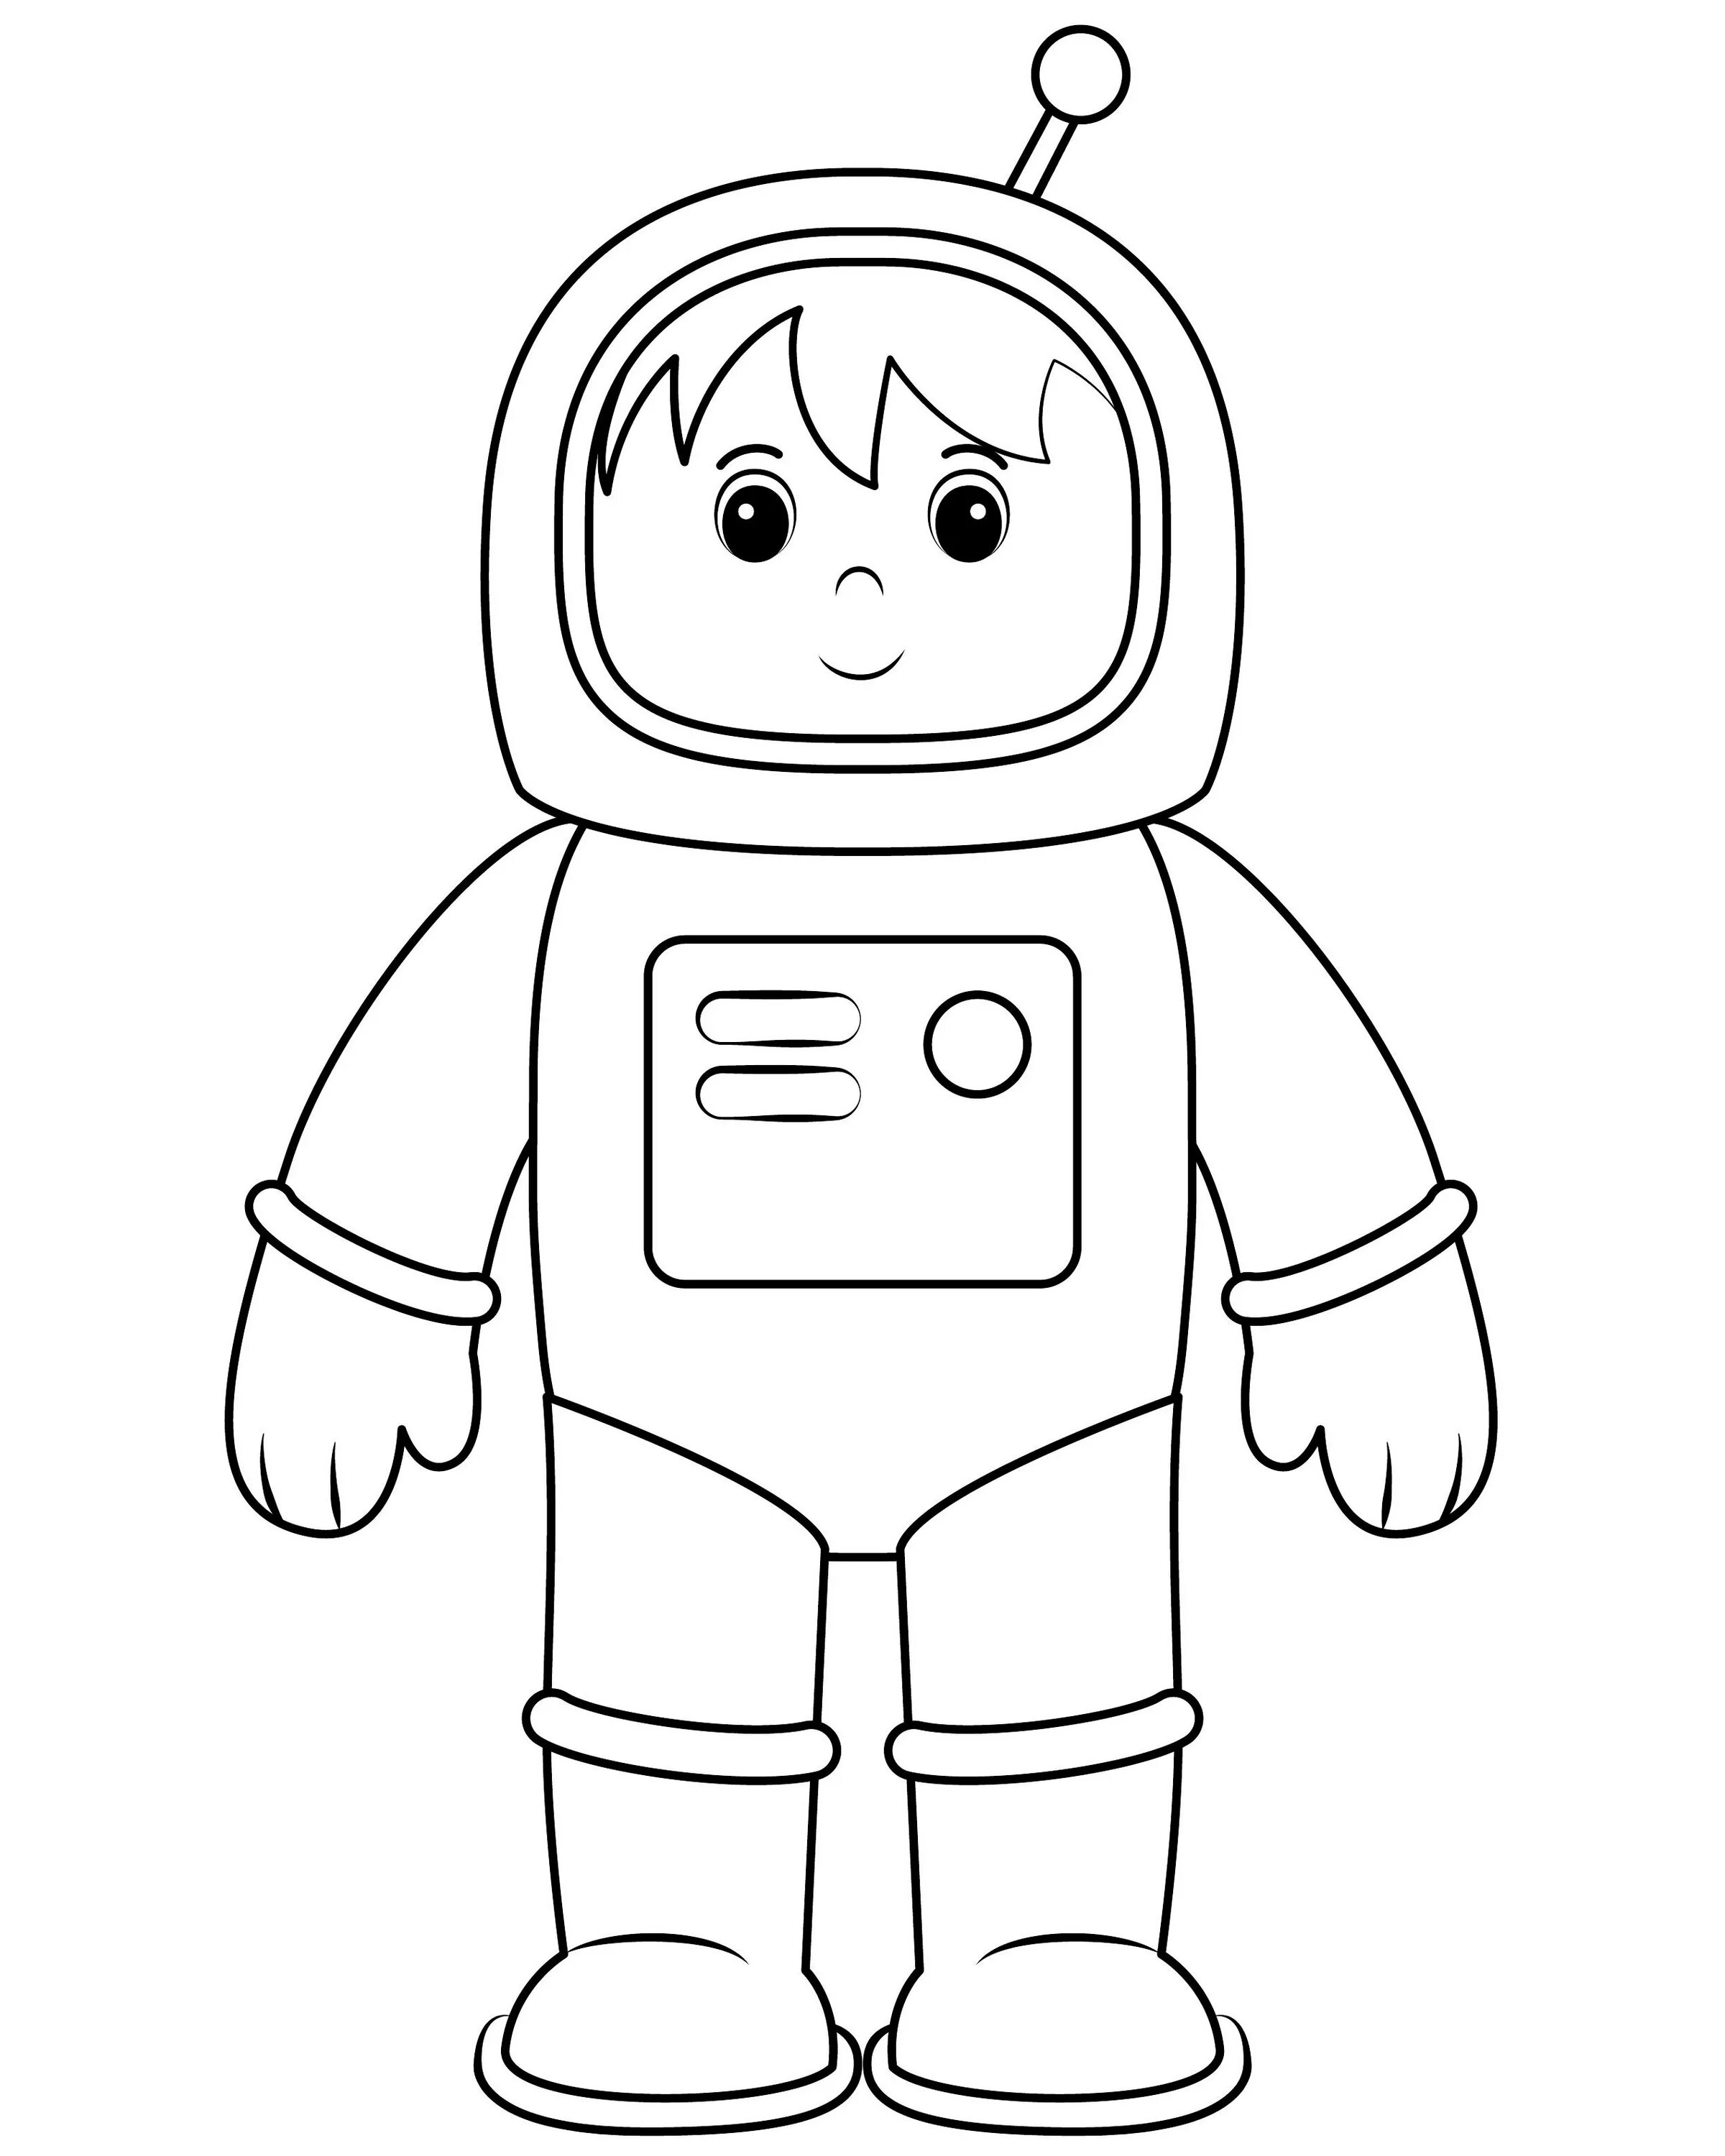 Космонавт раскраска для детей. Космонавт раскраска для малышей. Космонавт для раскрашивания для детей. Раскраска Космонавта в скафандре для детей. Космонавт шаблон для вырезания распечатать